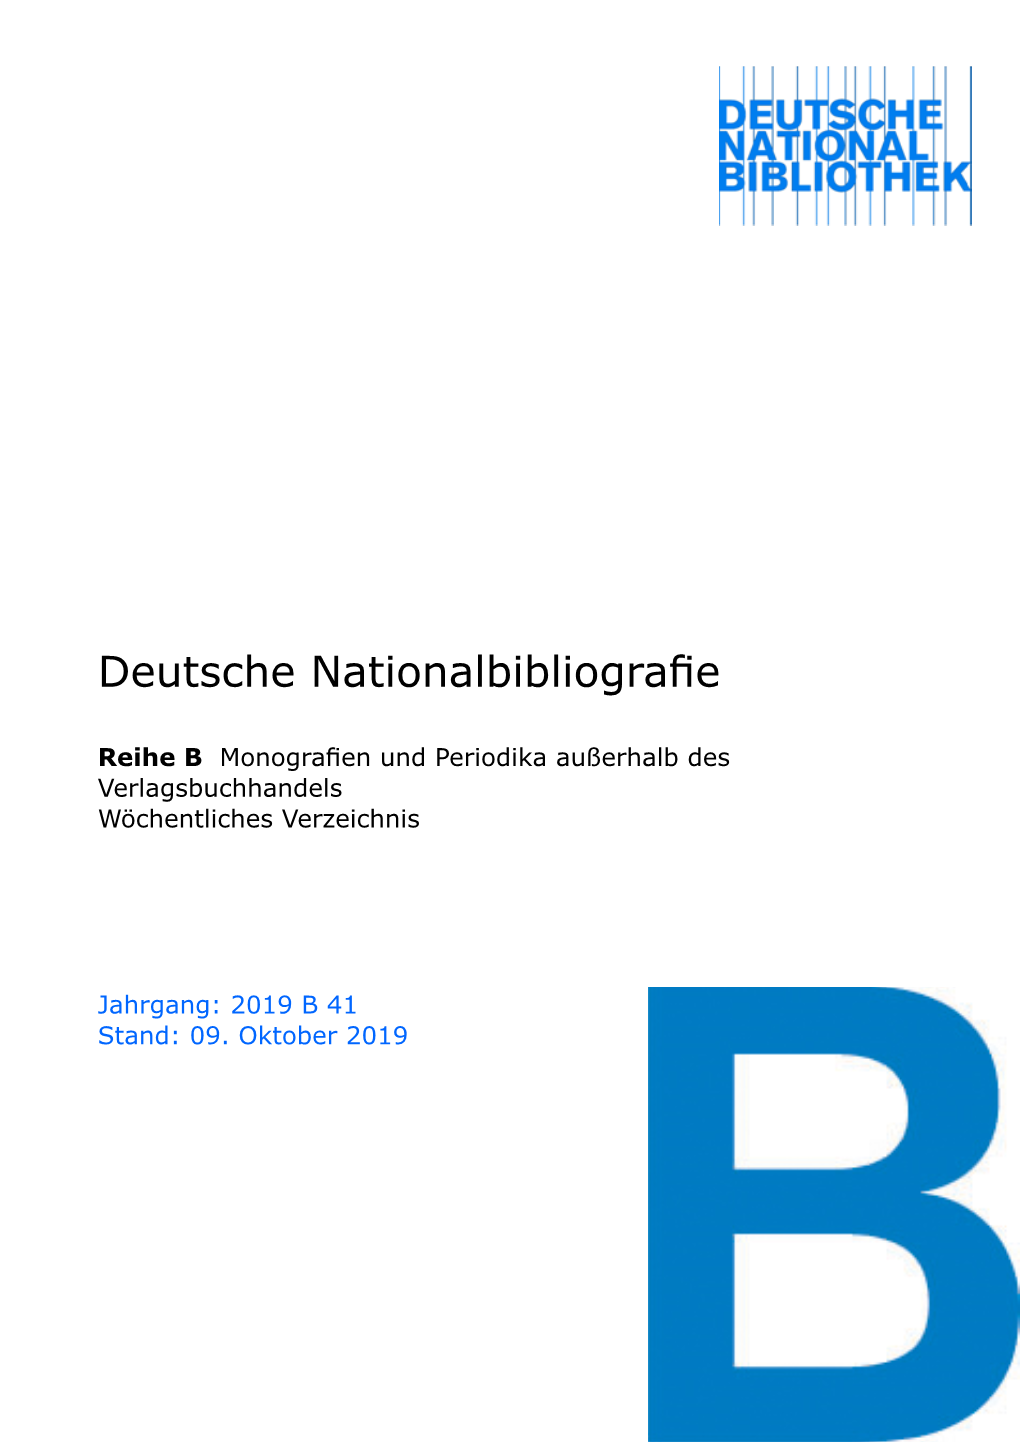 Deutsche Nationalbibliografie 2019 B 41